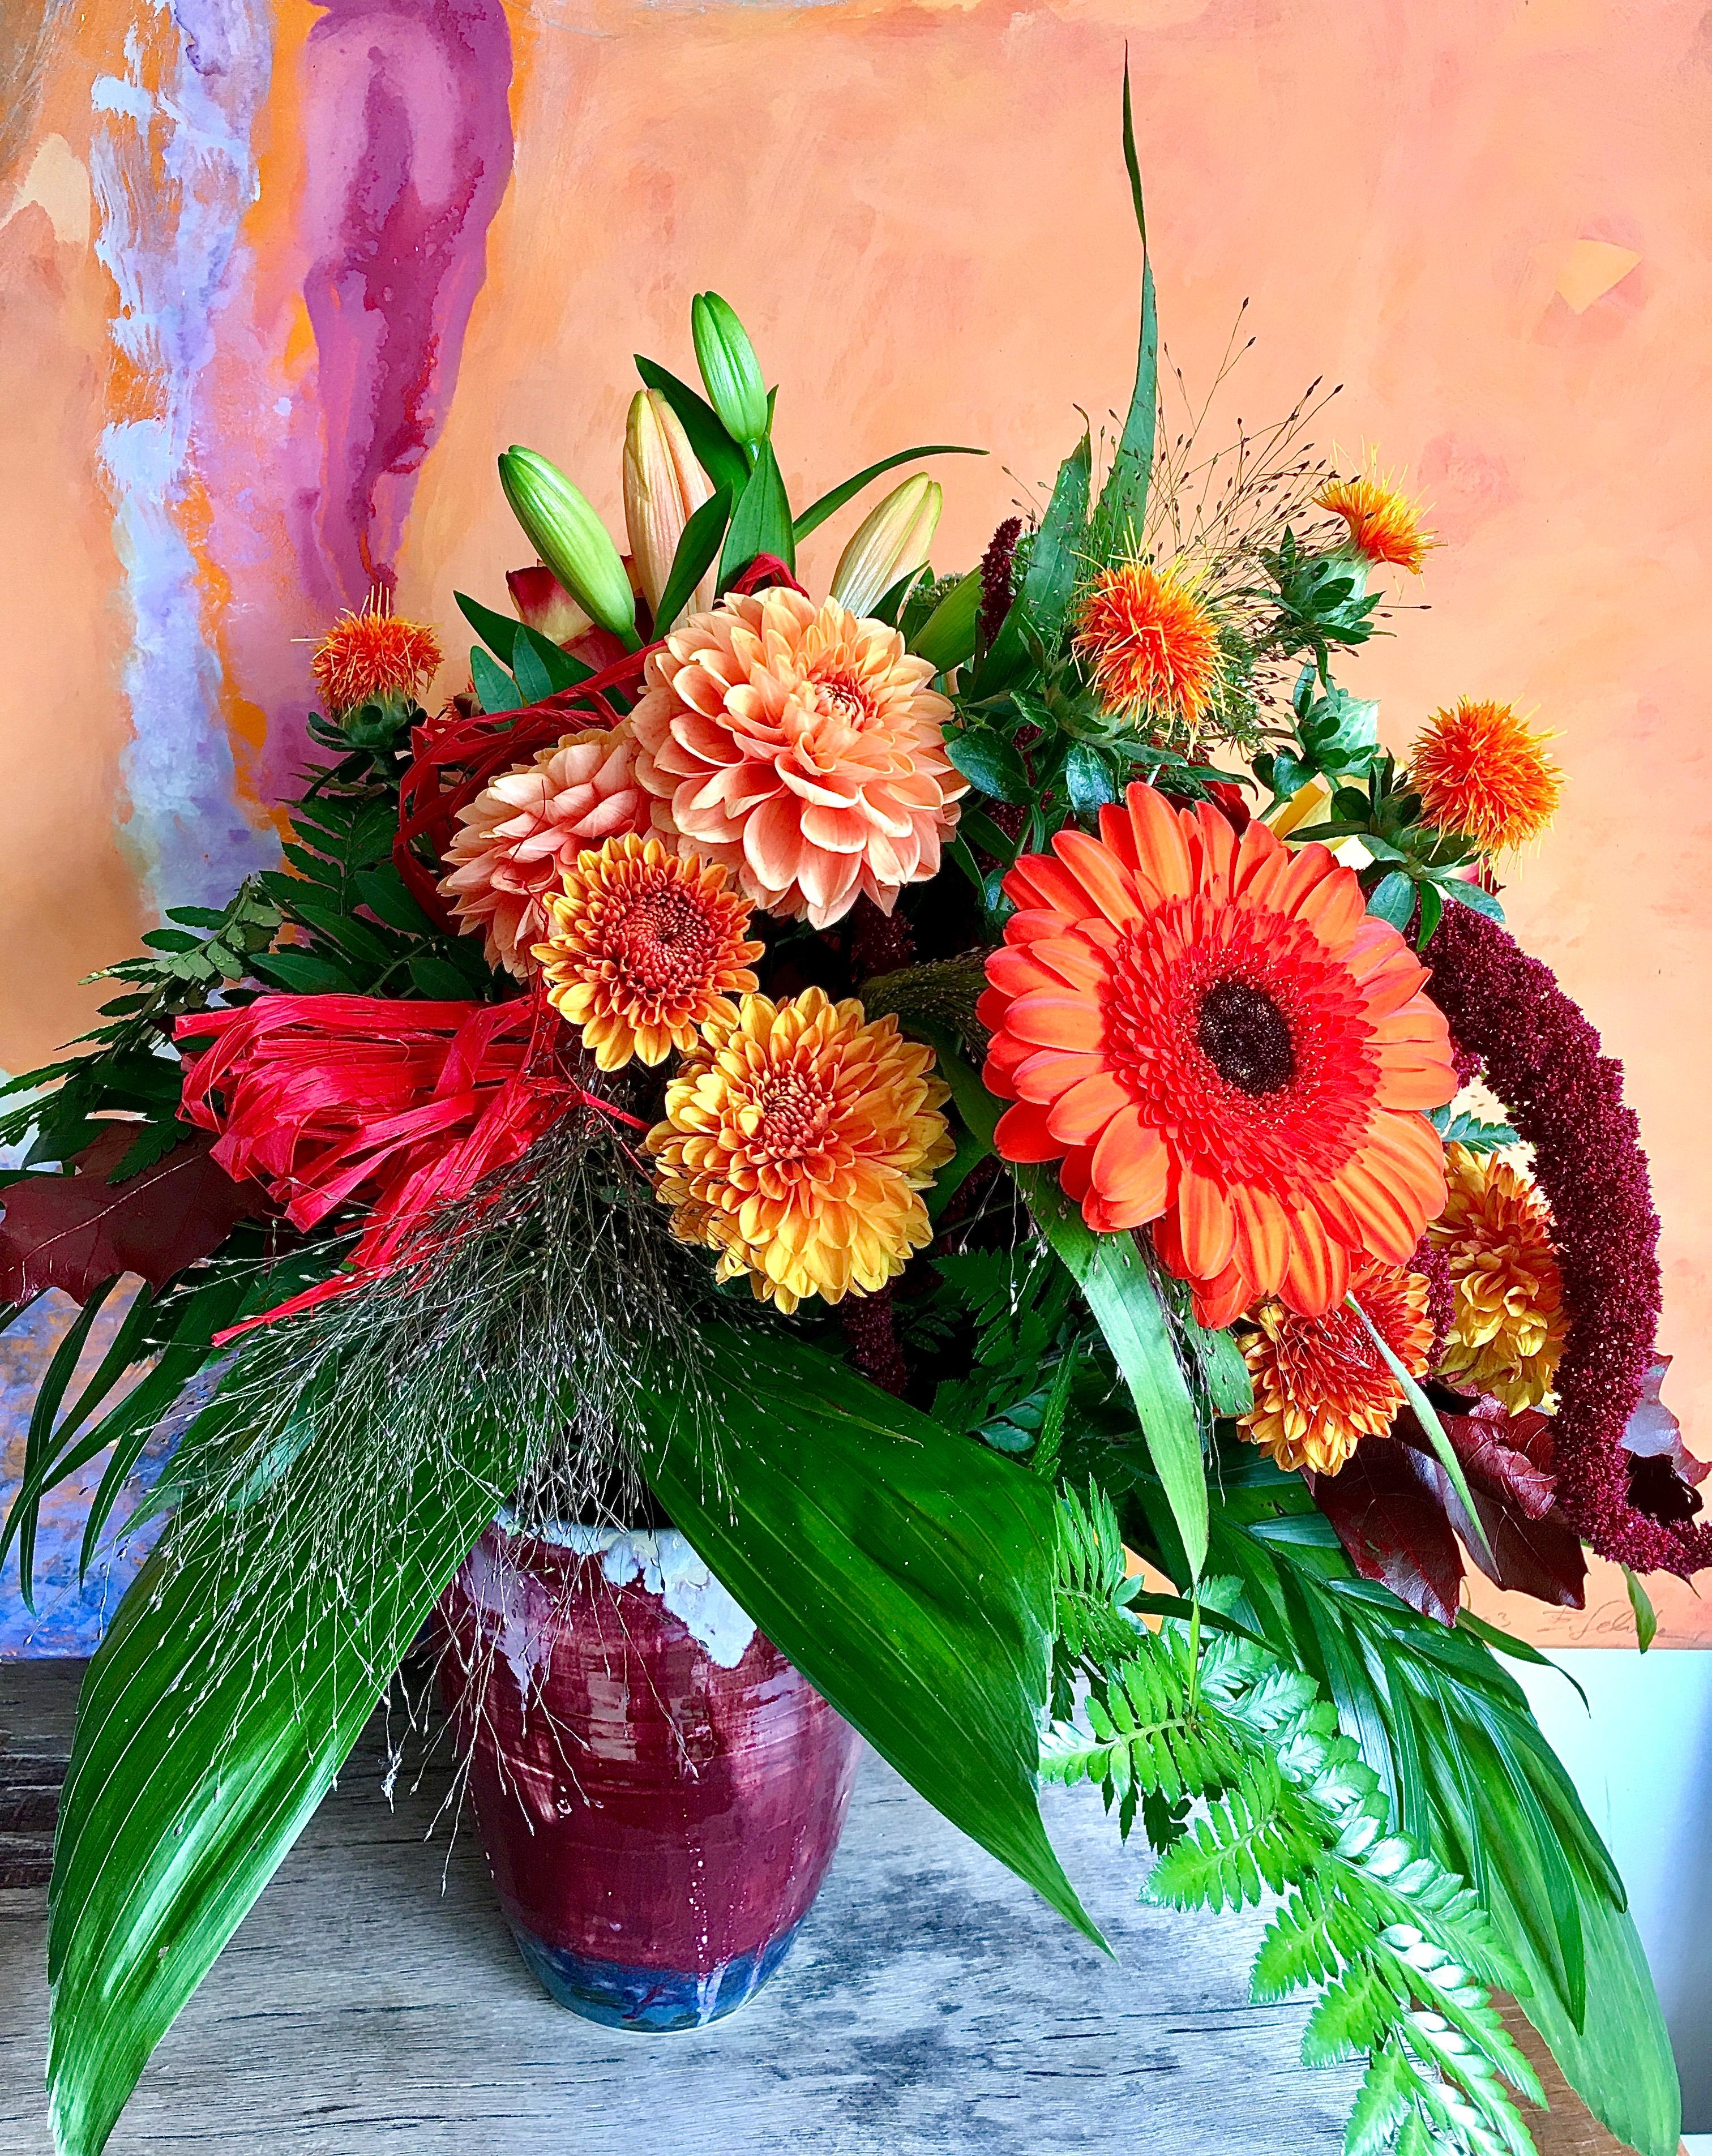 Dieser schöne Strauß zaubert Herbststimmung pur im Raum !  #farbenpracht #flowerpower #herbstblumen #herbstfarben   